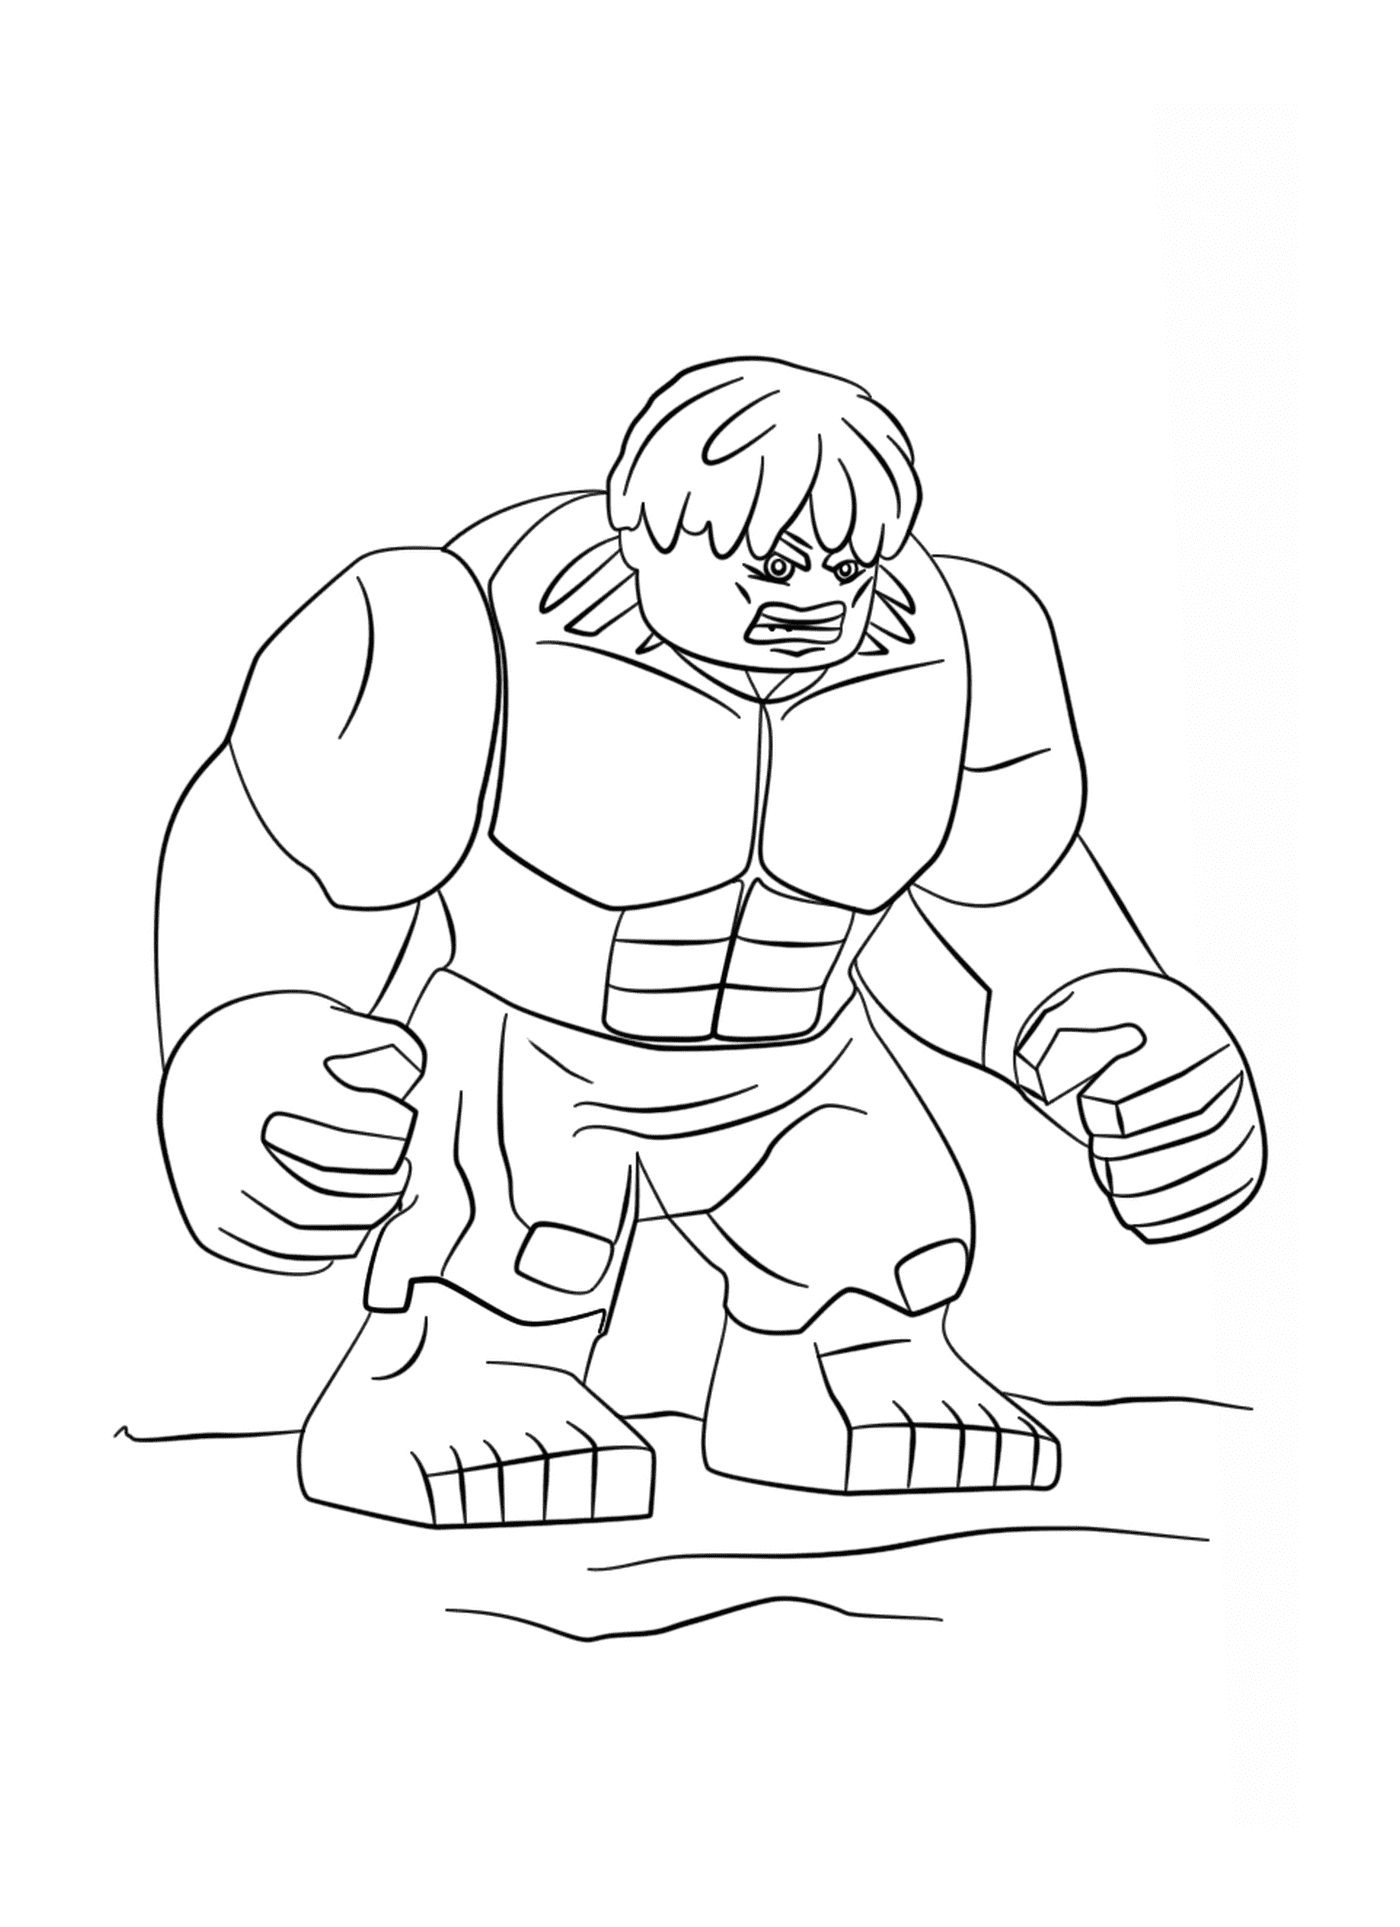  Hulk, the imposing cartoon character 